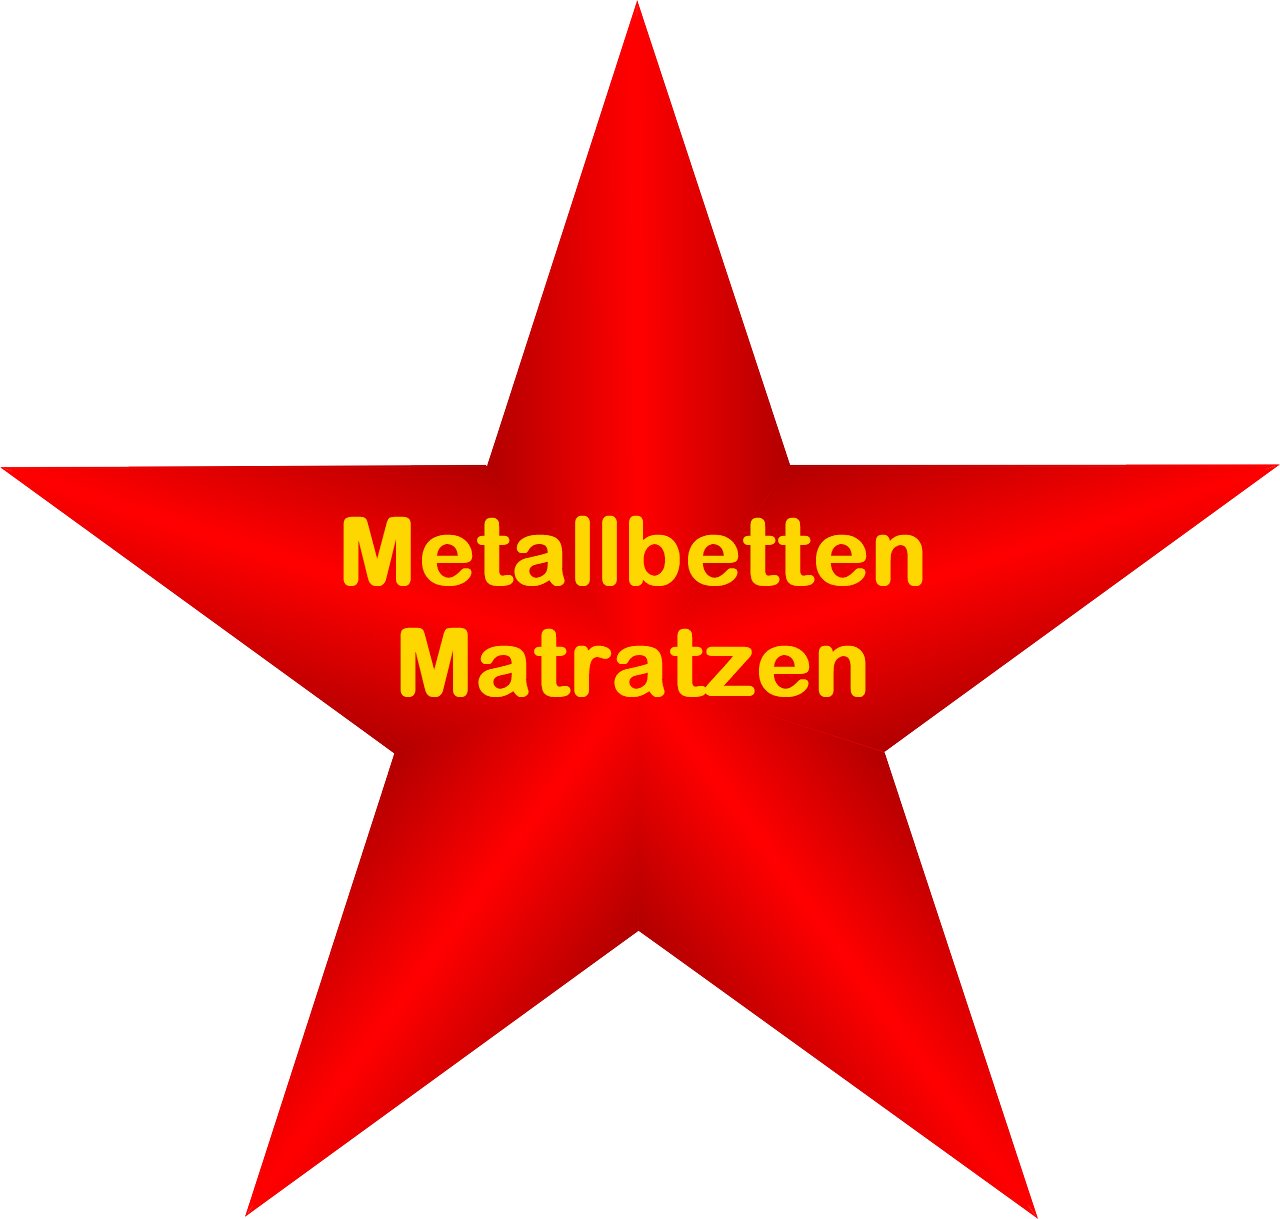 Metallbetten Matratzen